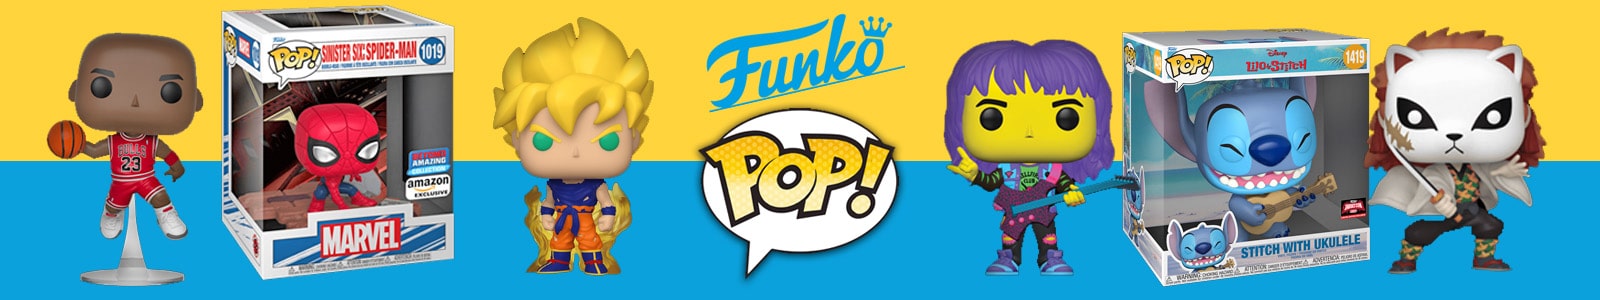 Funko pop, tutte le collezioni delle action figures più iconiche di sempre